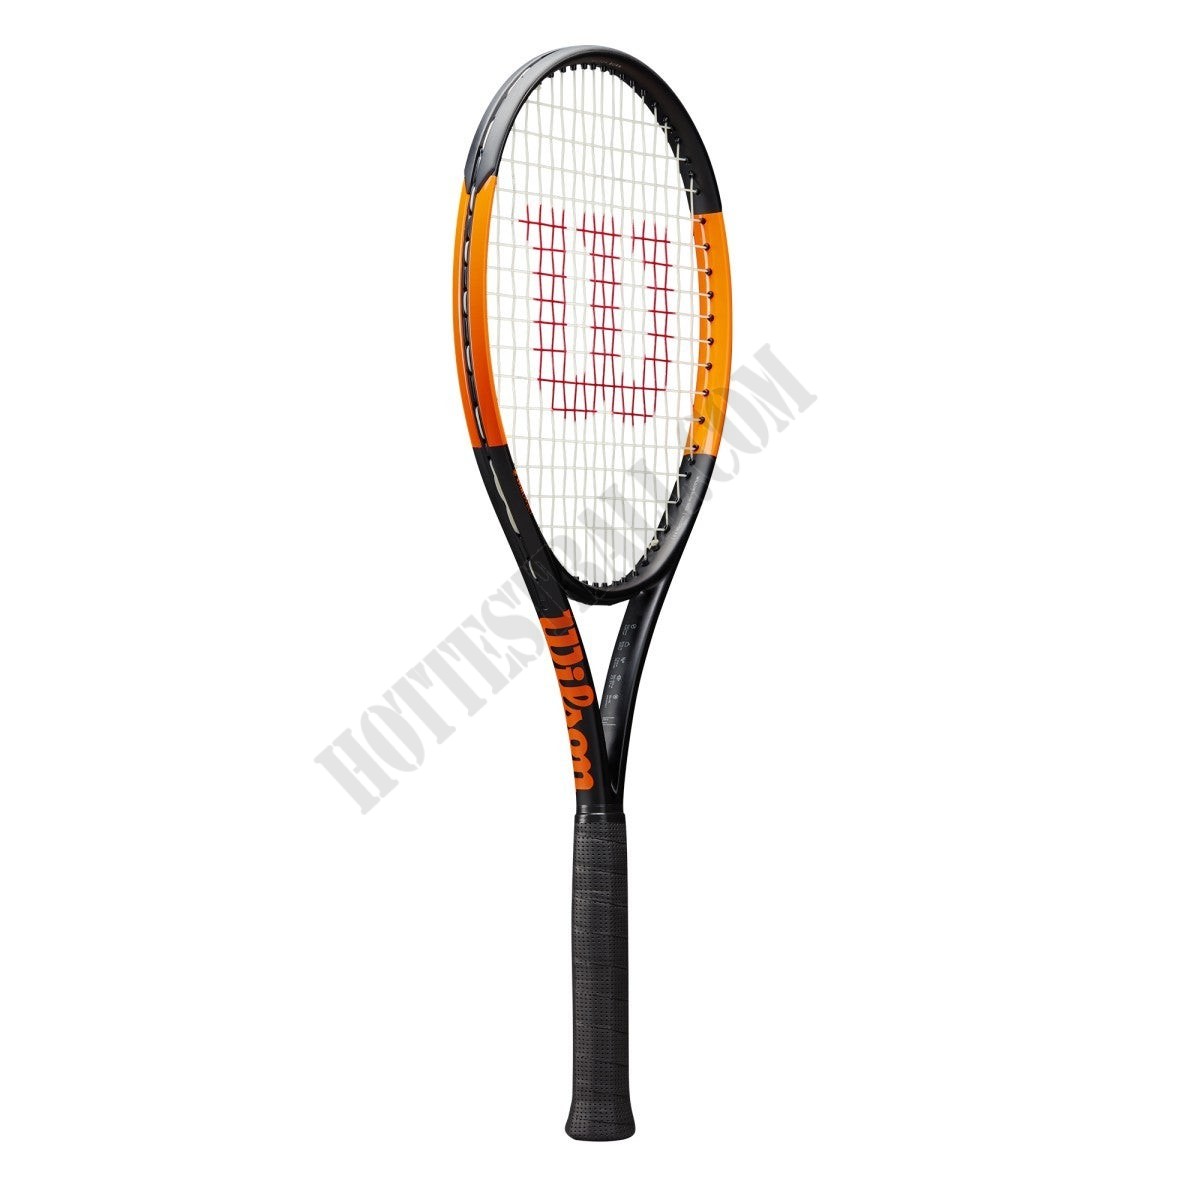 Burn 100ULS Tennis Racket - Wilson Discount Store - Burn 100ULS Tennis Racket - Wilson Discount Store